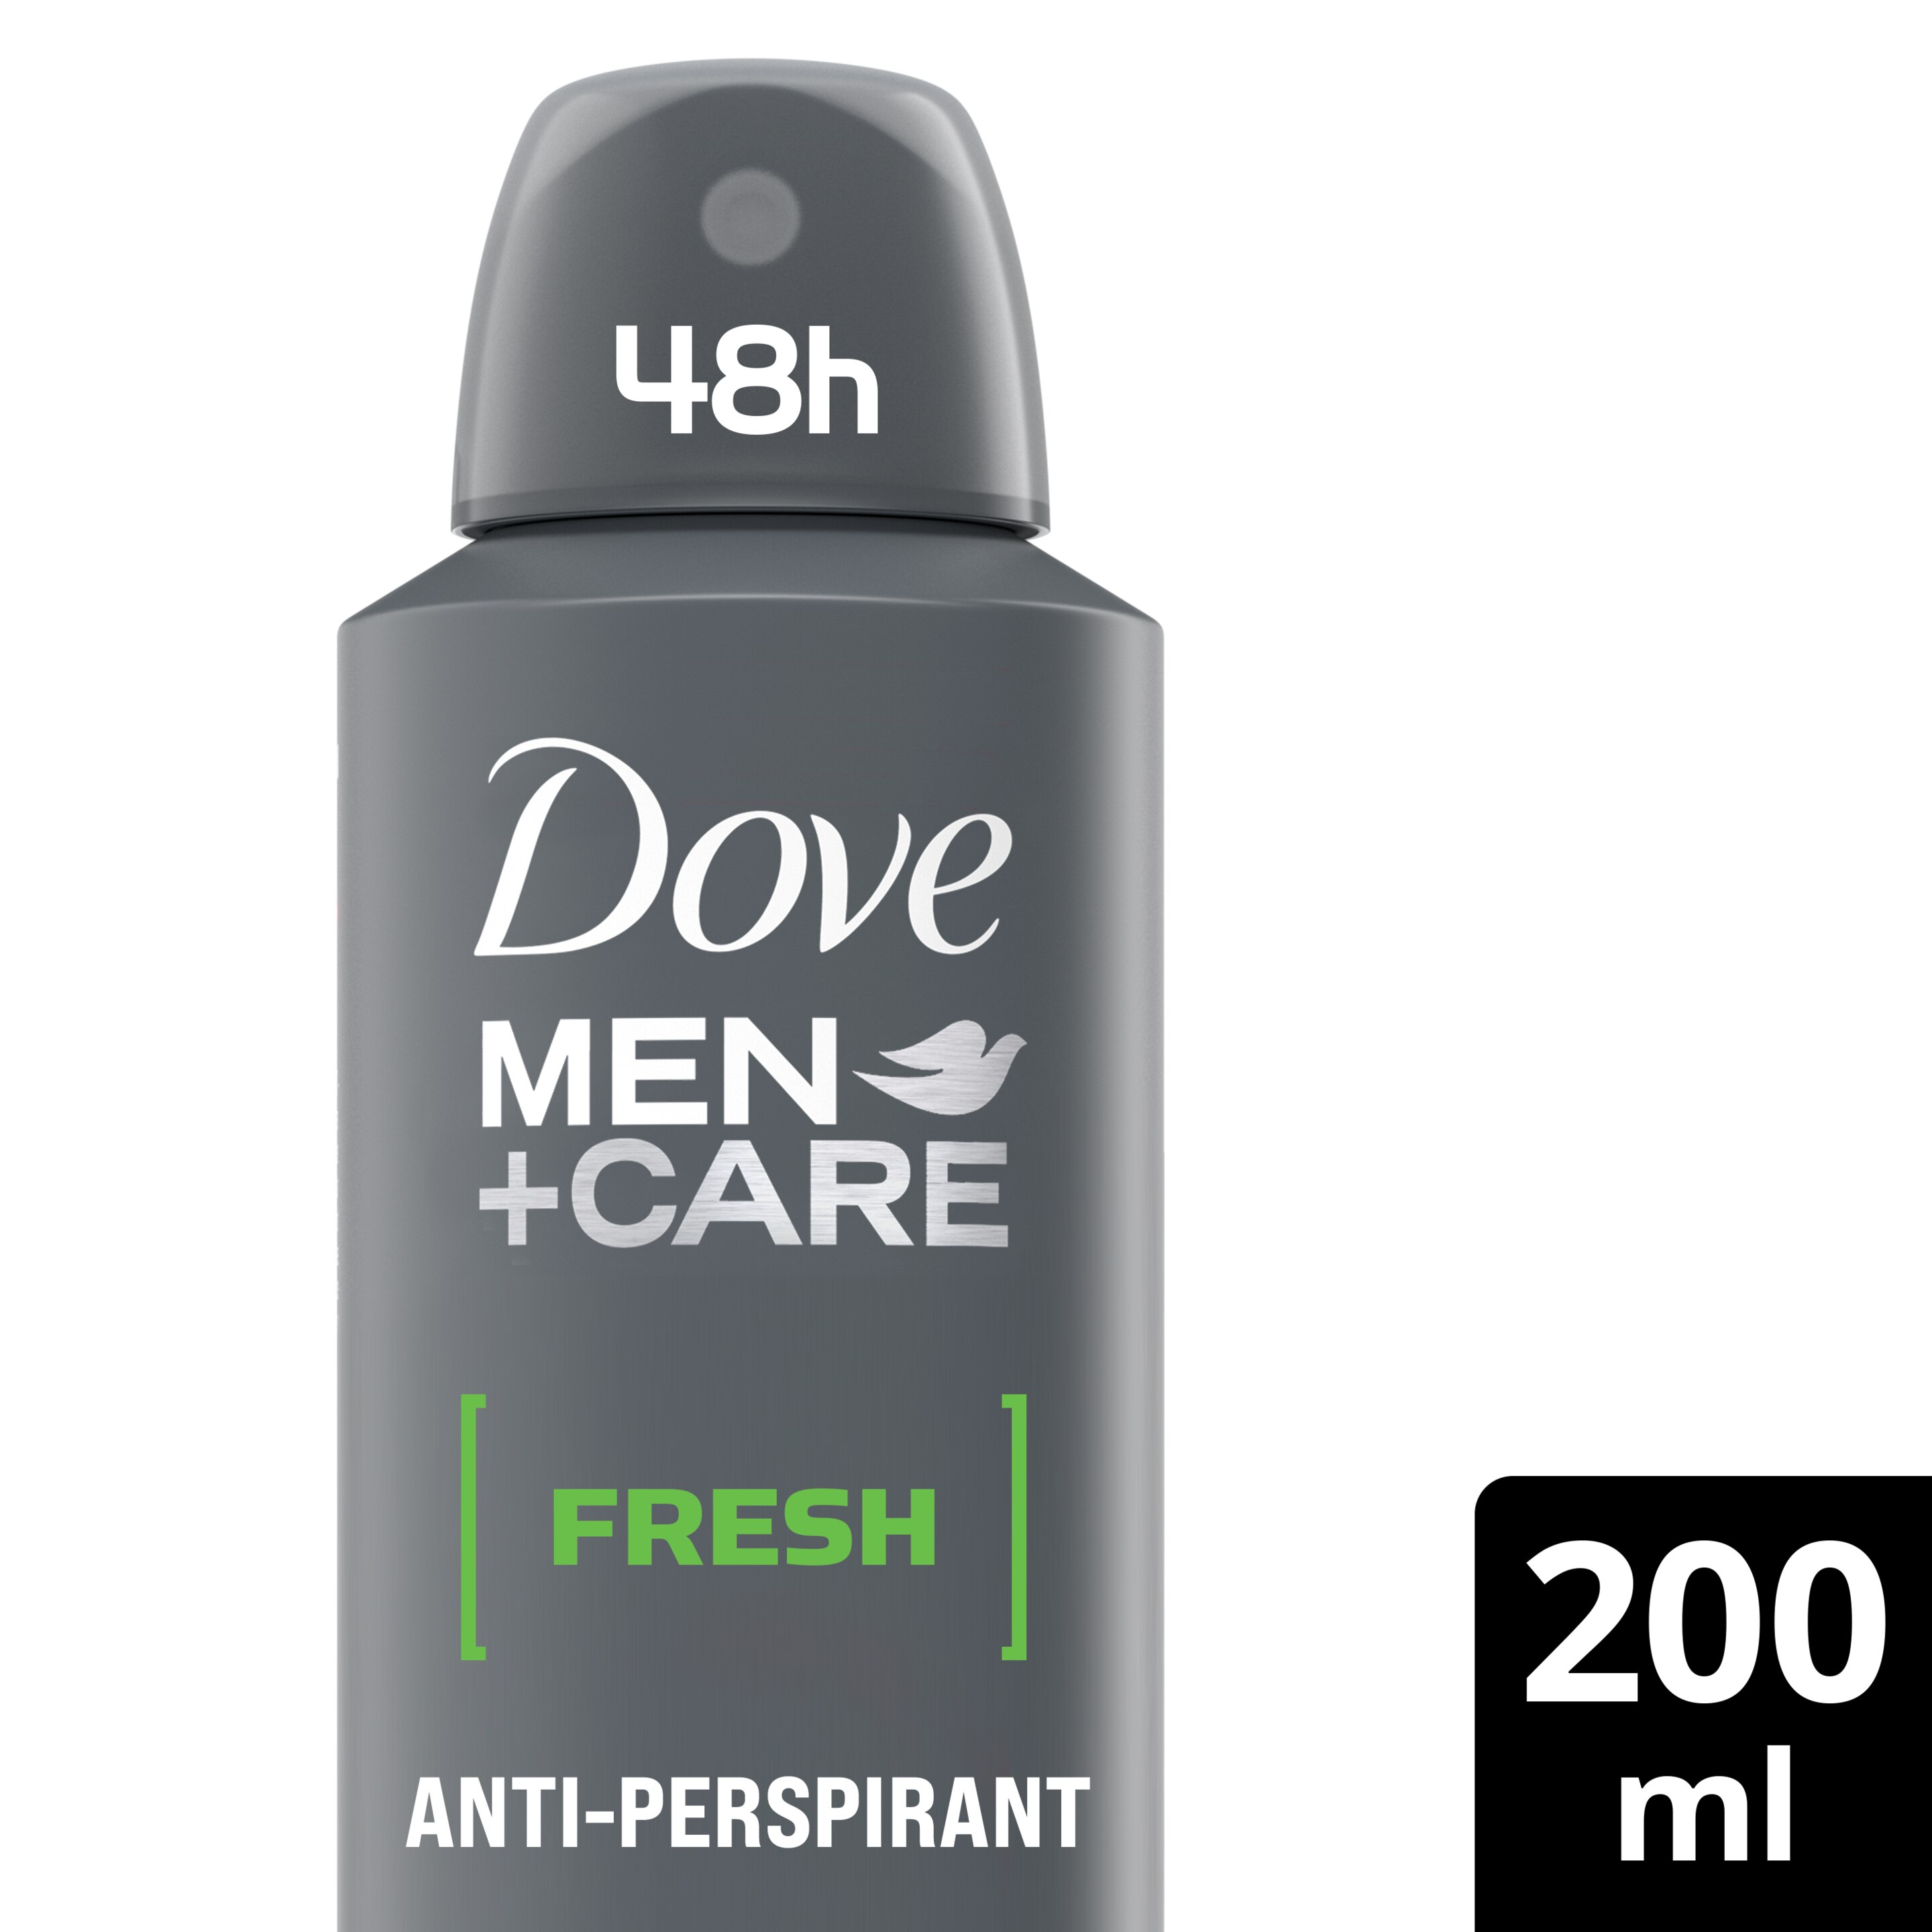 Dove Men+Care Fresh Antiperspirant Deodorant Aerosol